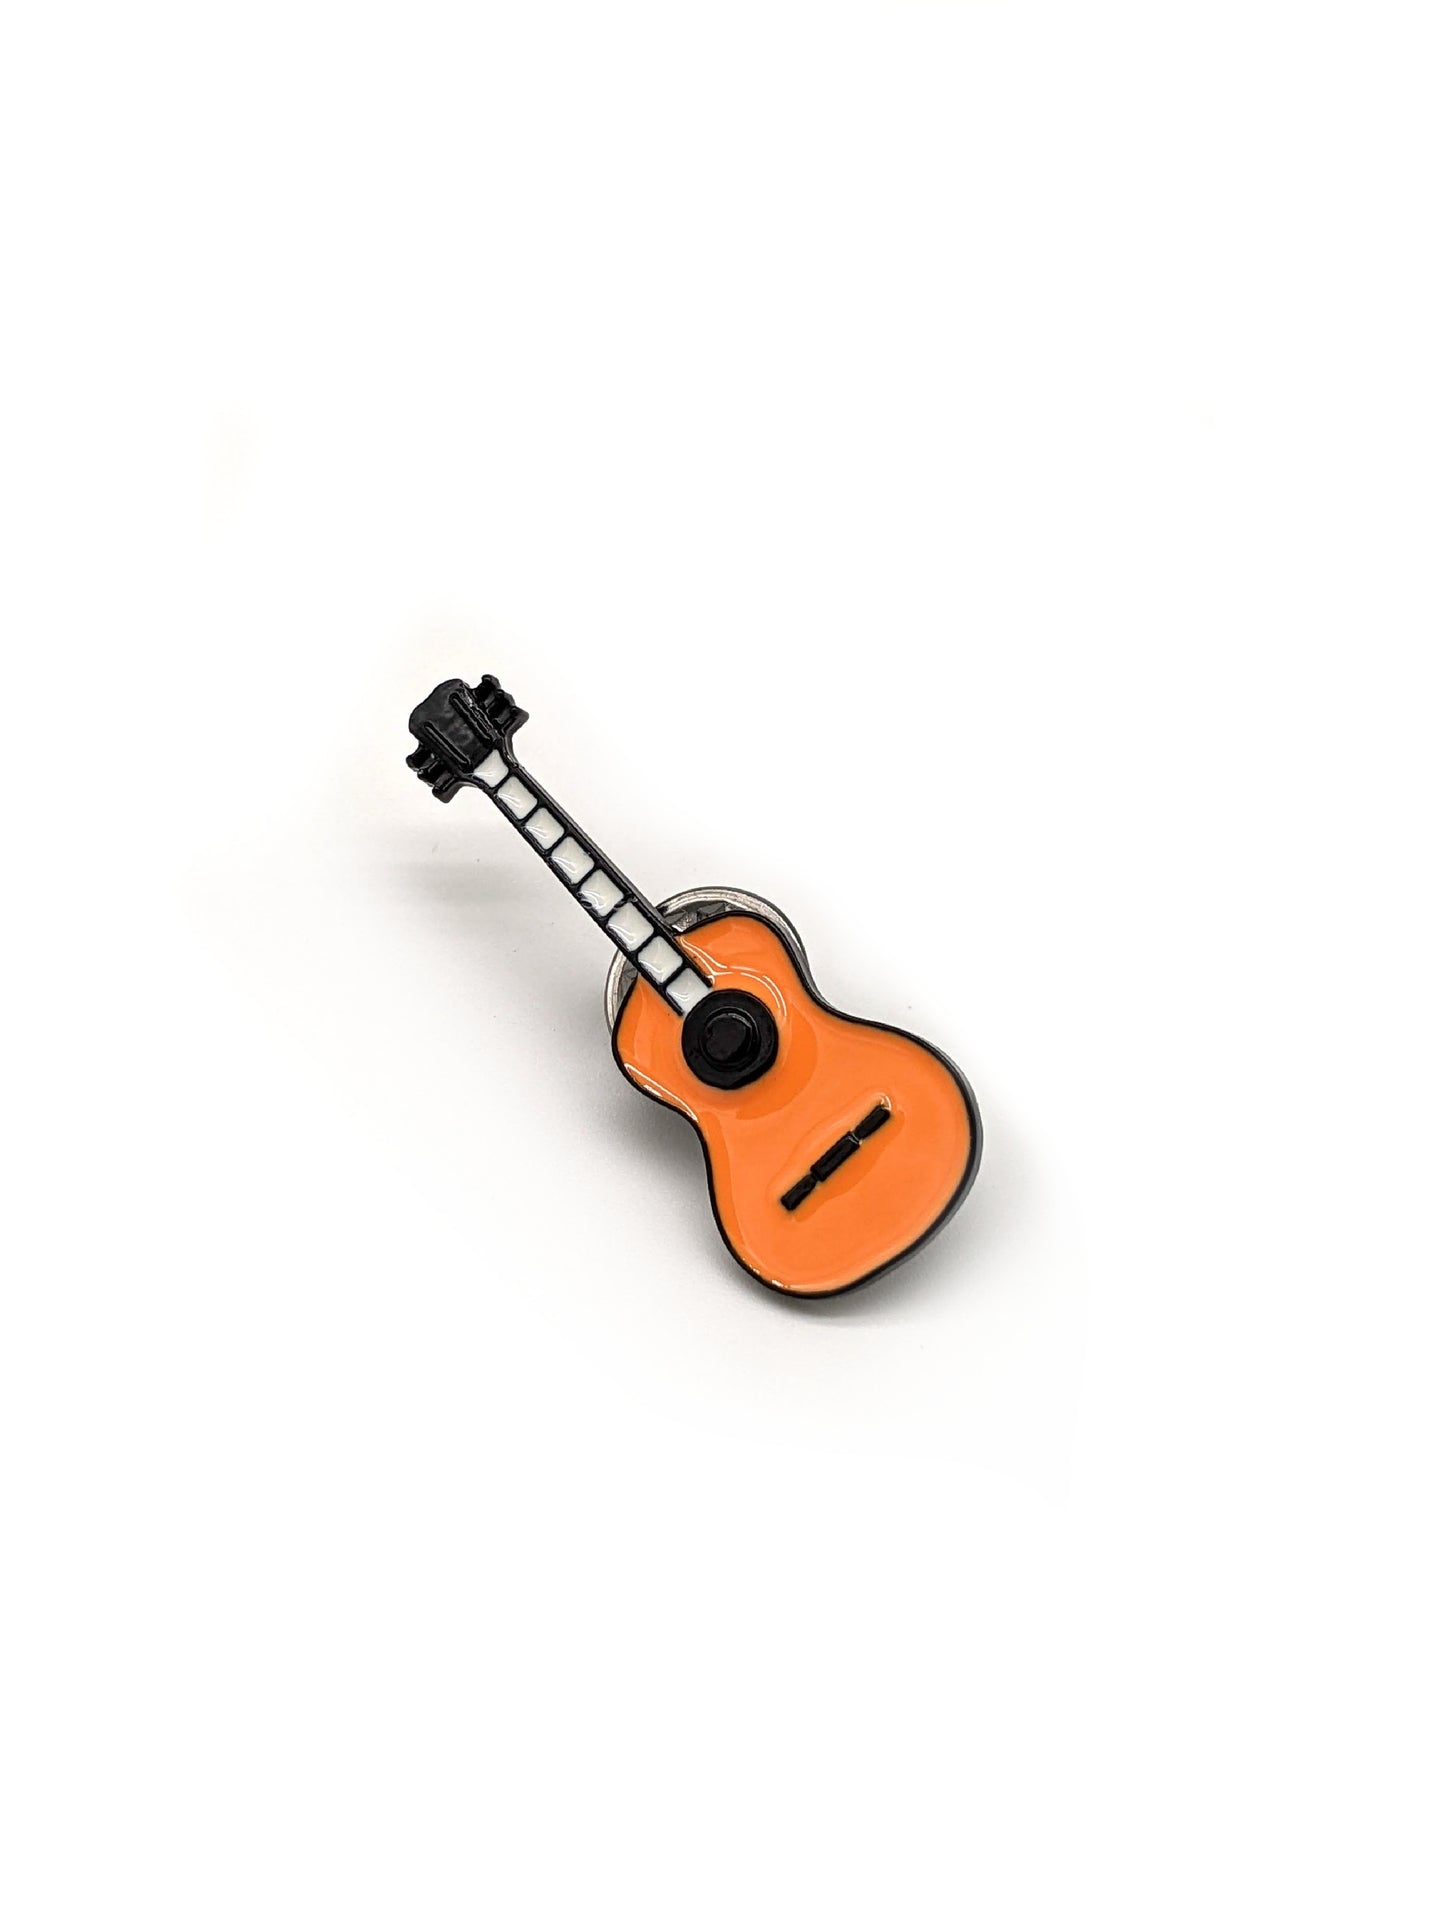 Hat Pin - Acoustic Guitar